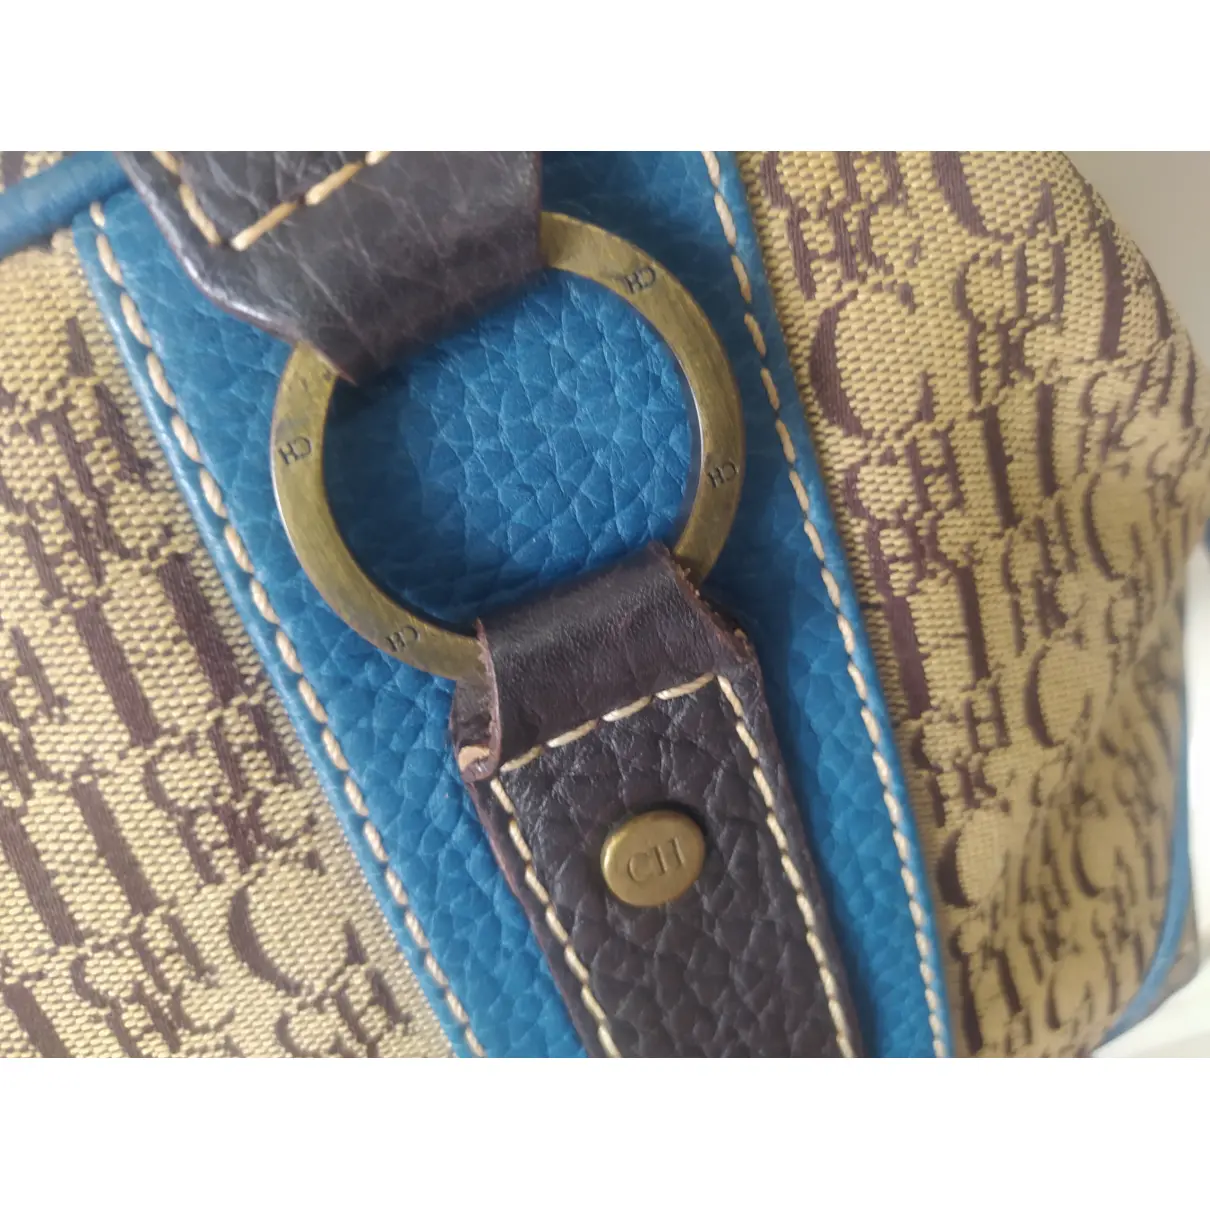 Buy Carolina Herrera Cloth handbag online